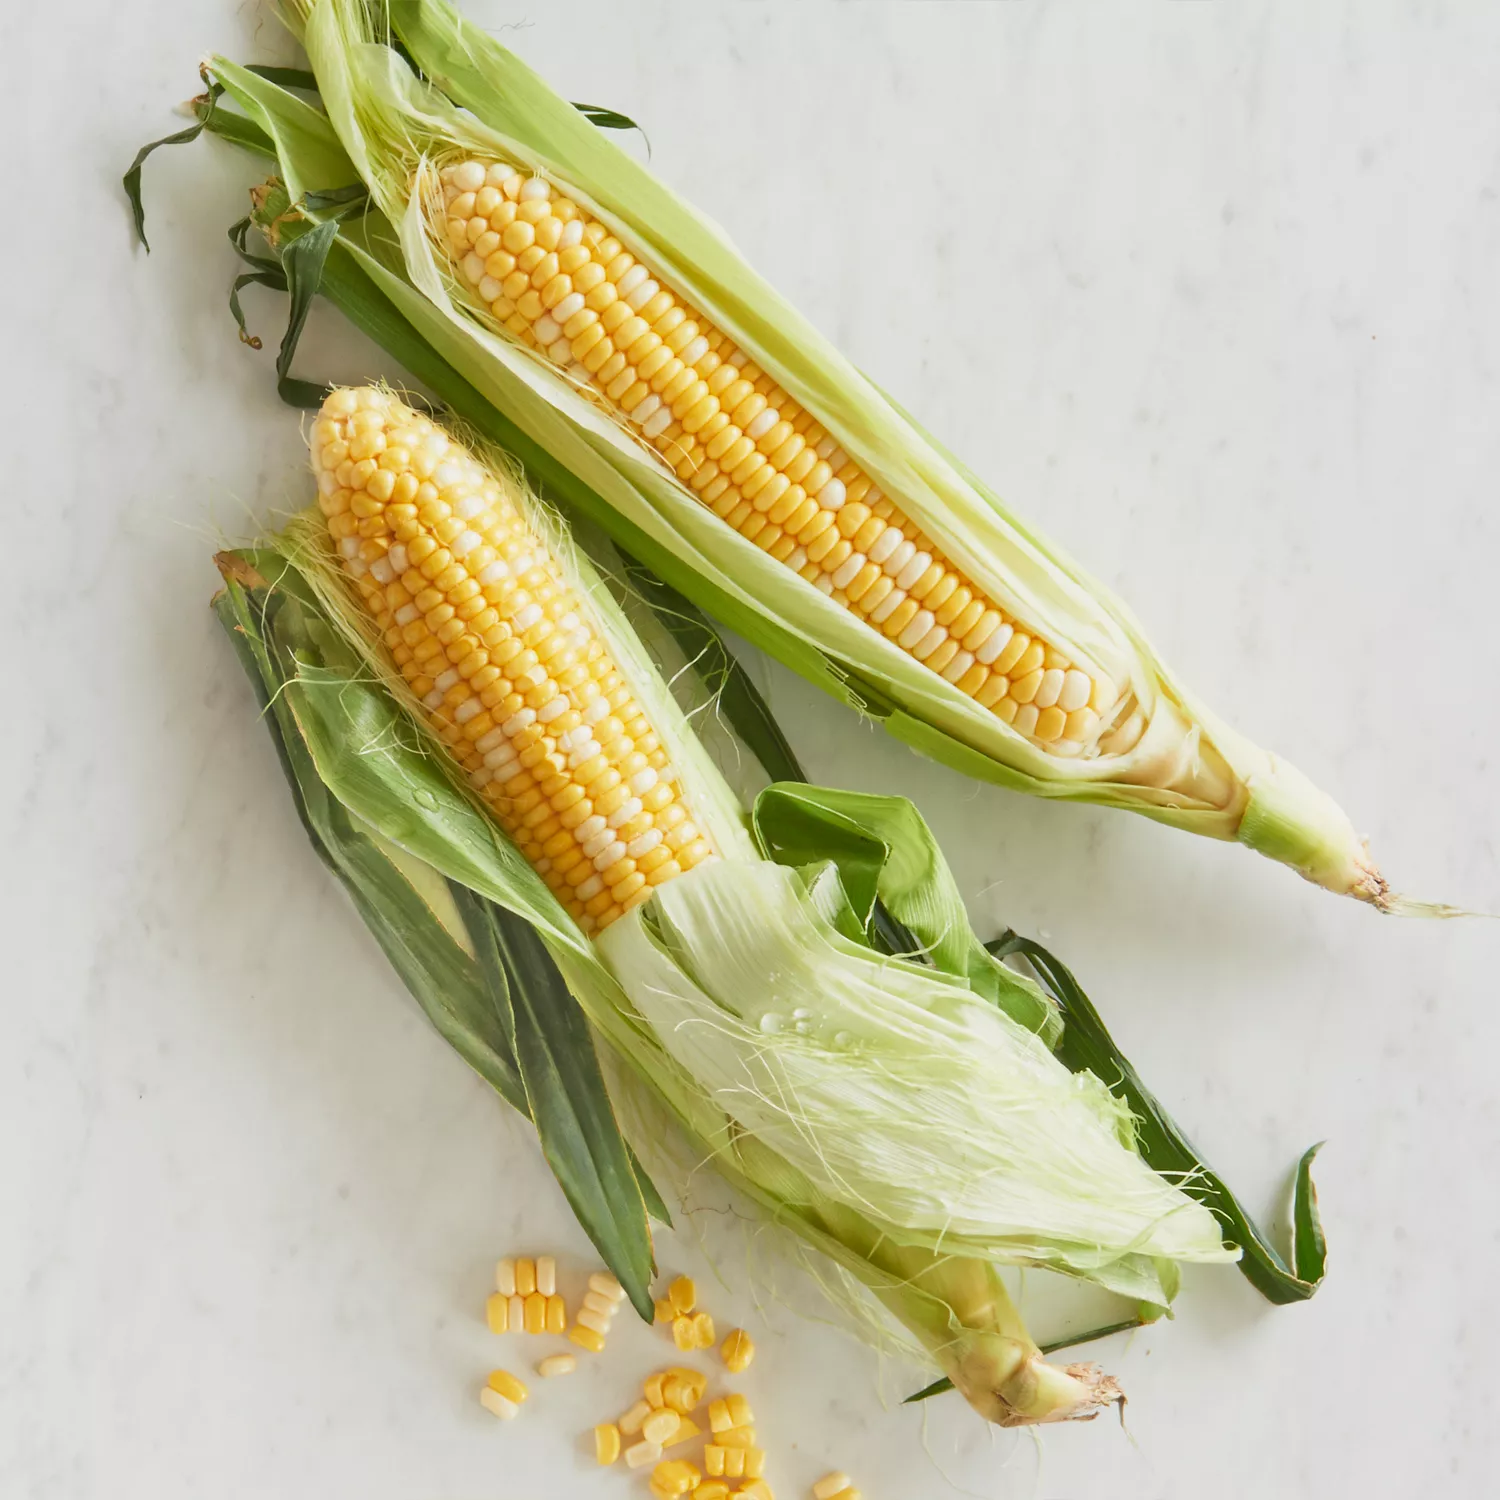 Street Corn (boiled corn with seasoned butter)-The Little Epicurean